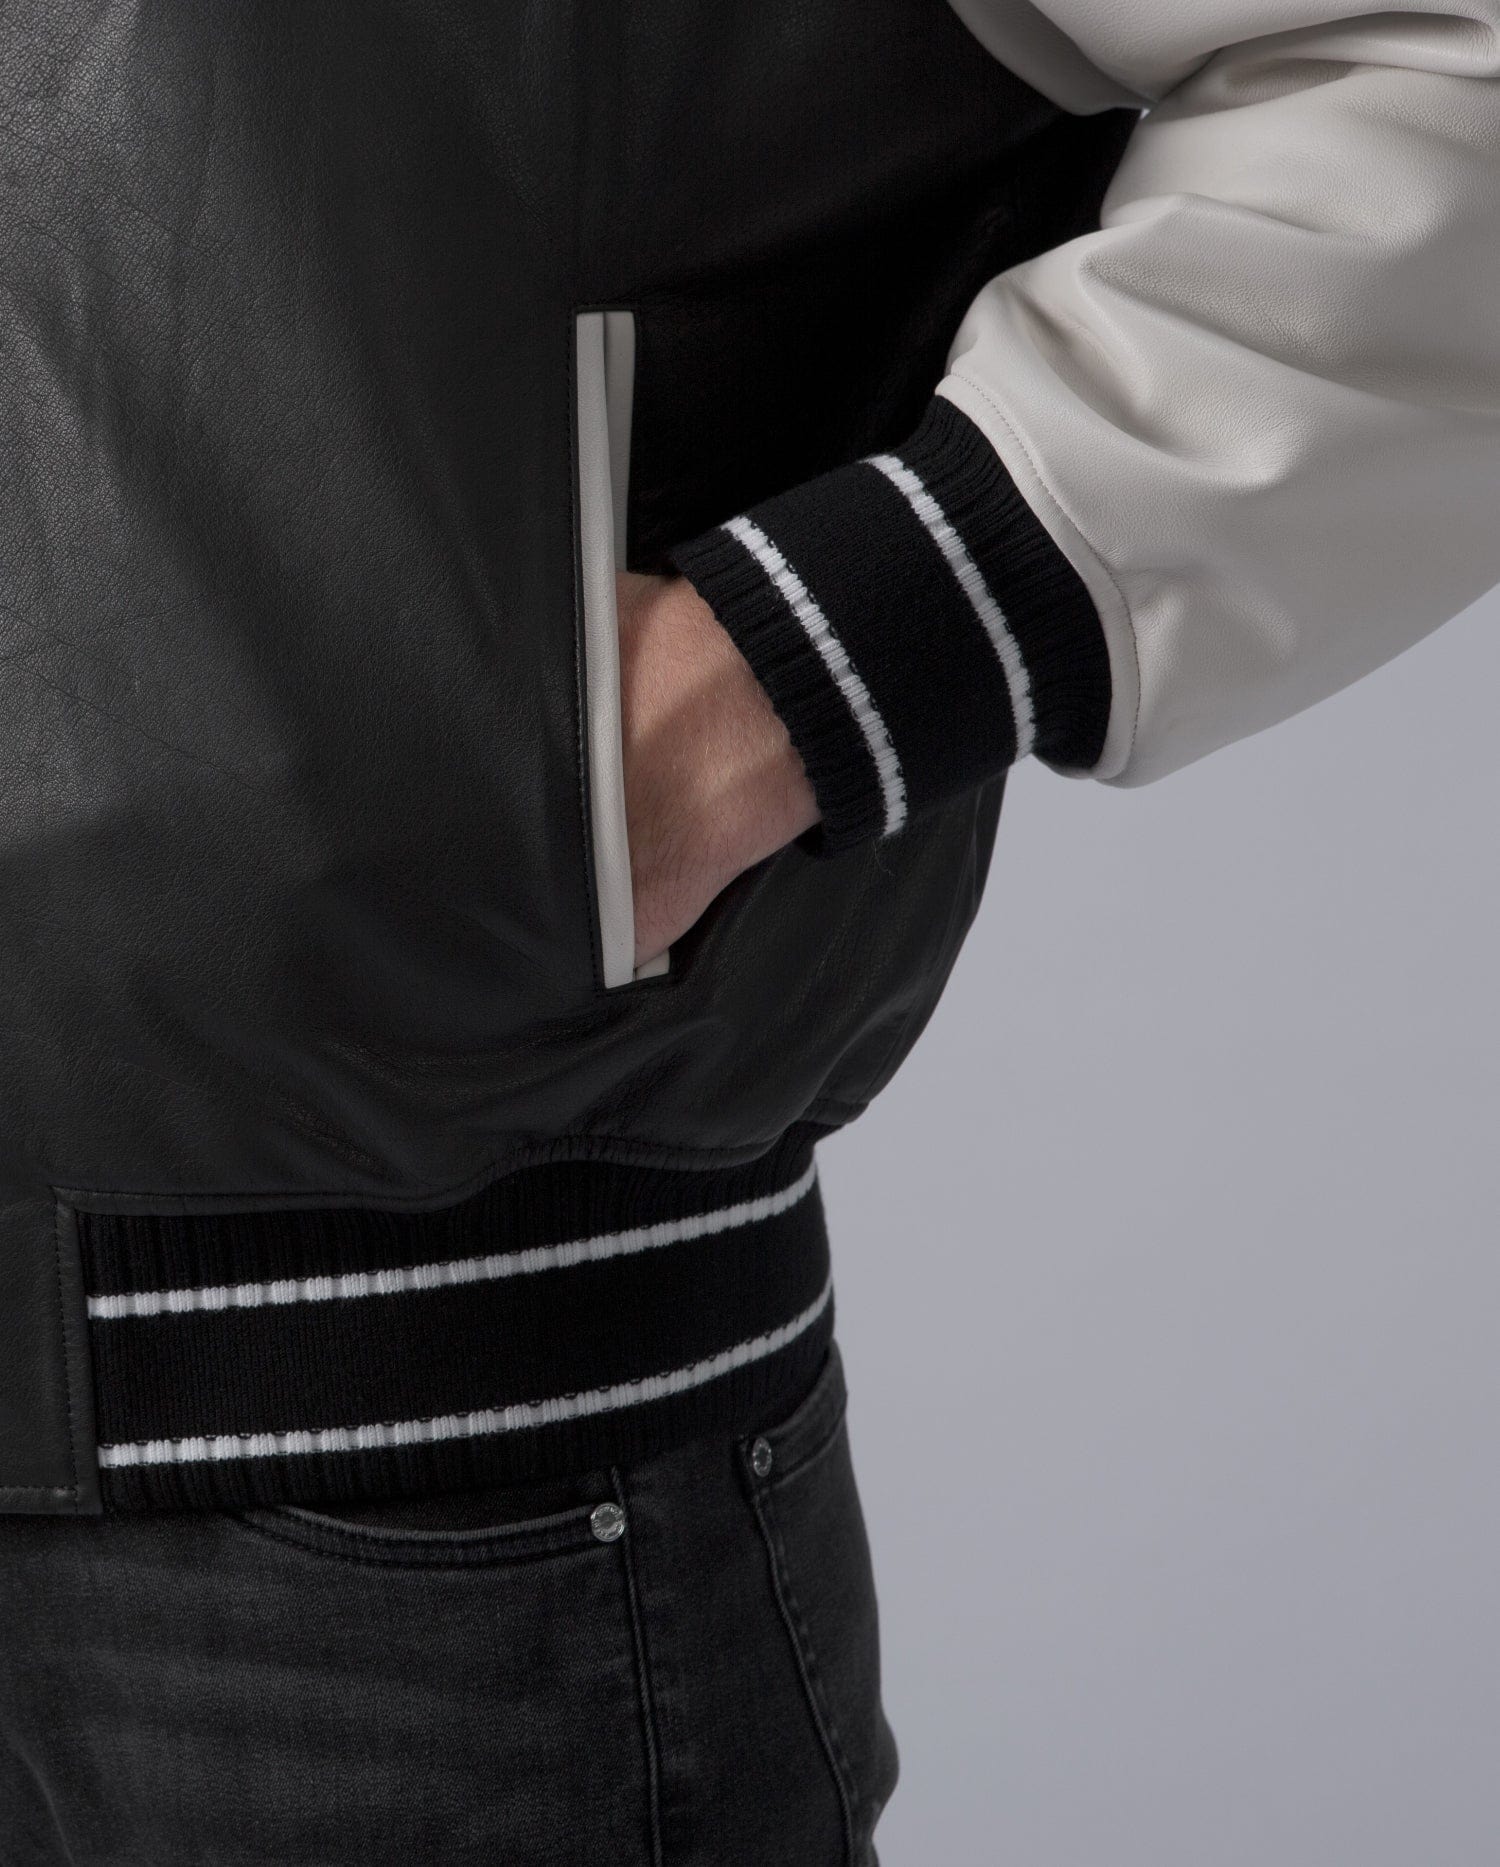 Black Men's Quilted Leather Varsity Jacket Letterman Jacket